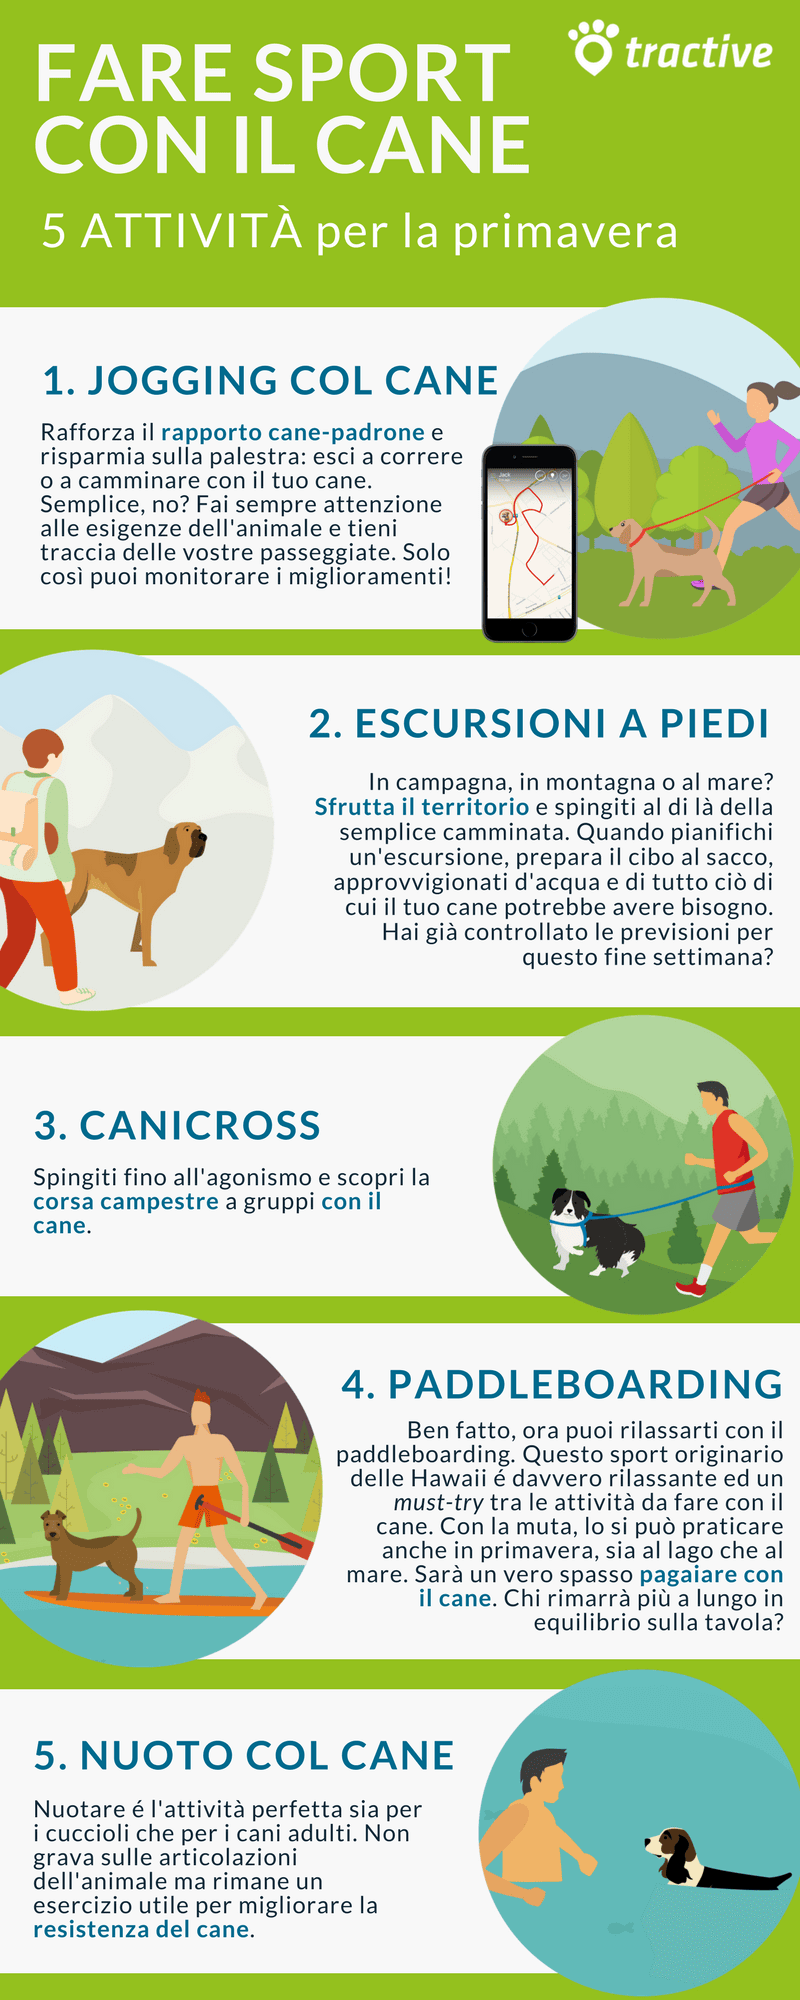 5 attività da fare con il cane in primavera